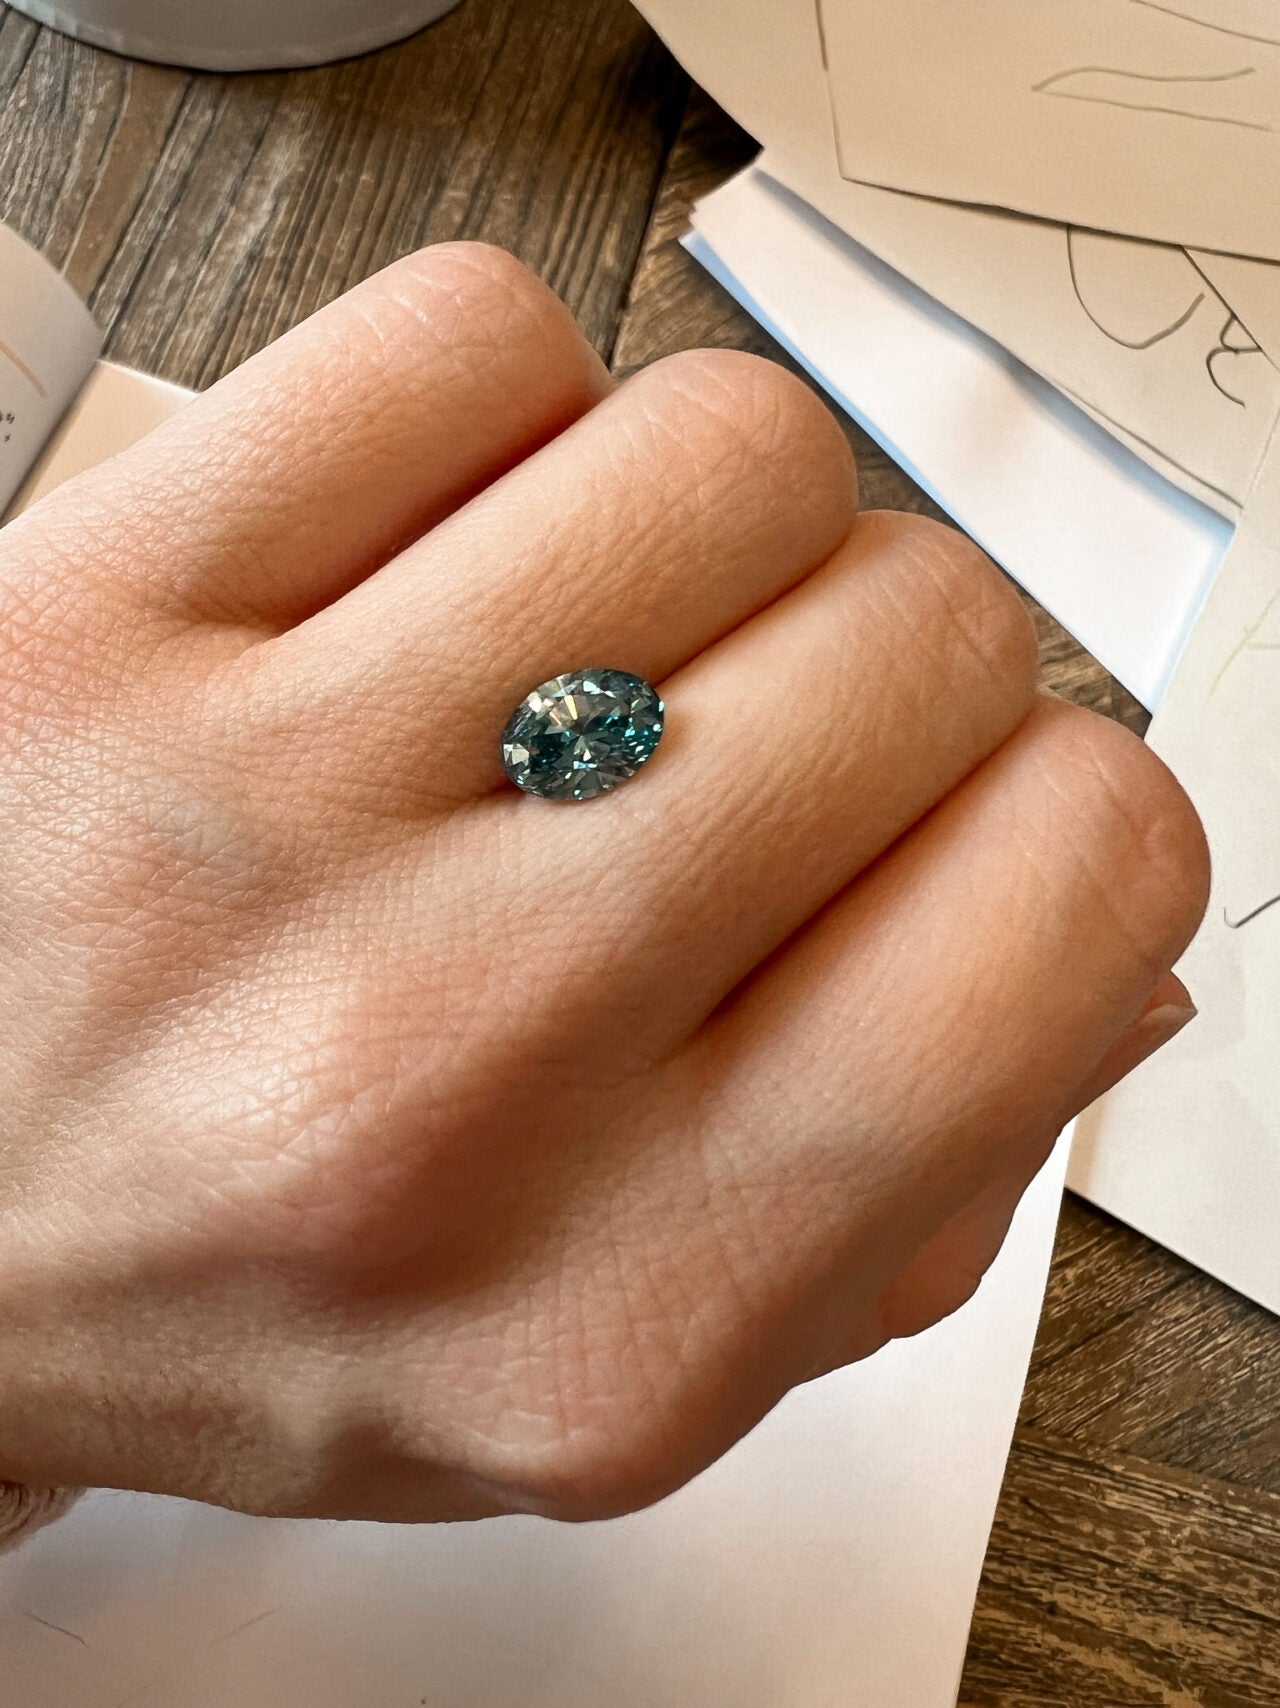 Wir bei Designer Diamonds haben nicht nur eine riesige Auswahl an vorhandene Schmuckstücken, wir designen auch dein neues Traumschmuckstück ganz nach deinen Wünschen. Auf dem Bild ist ein Aquamarin Edelstein zu sehen.